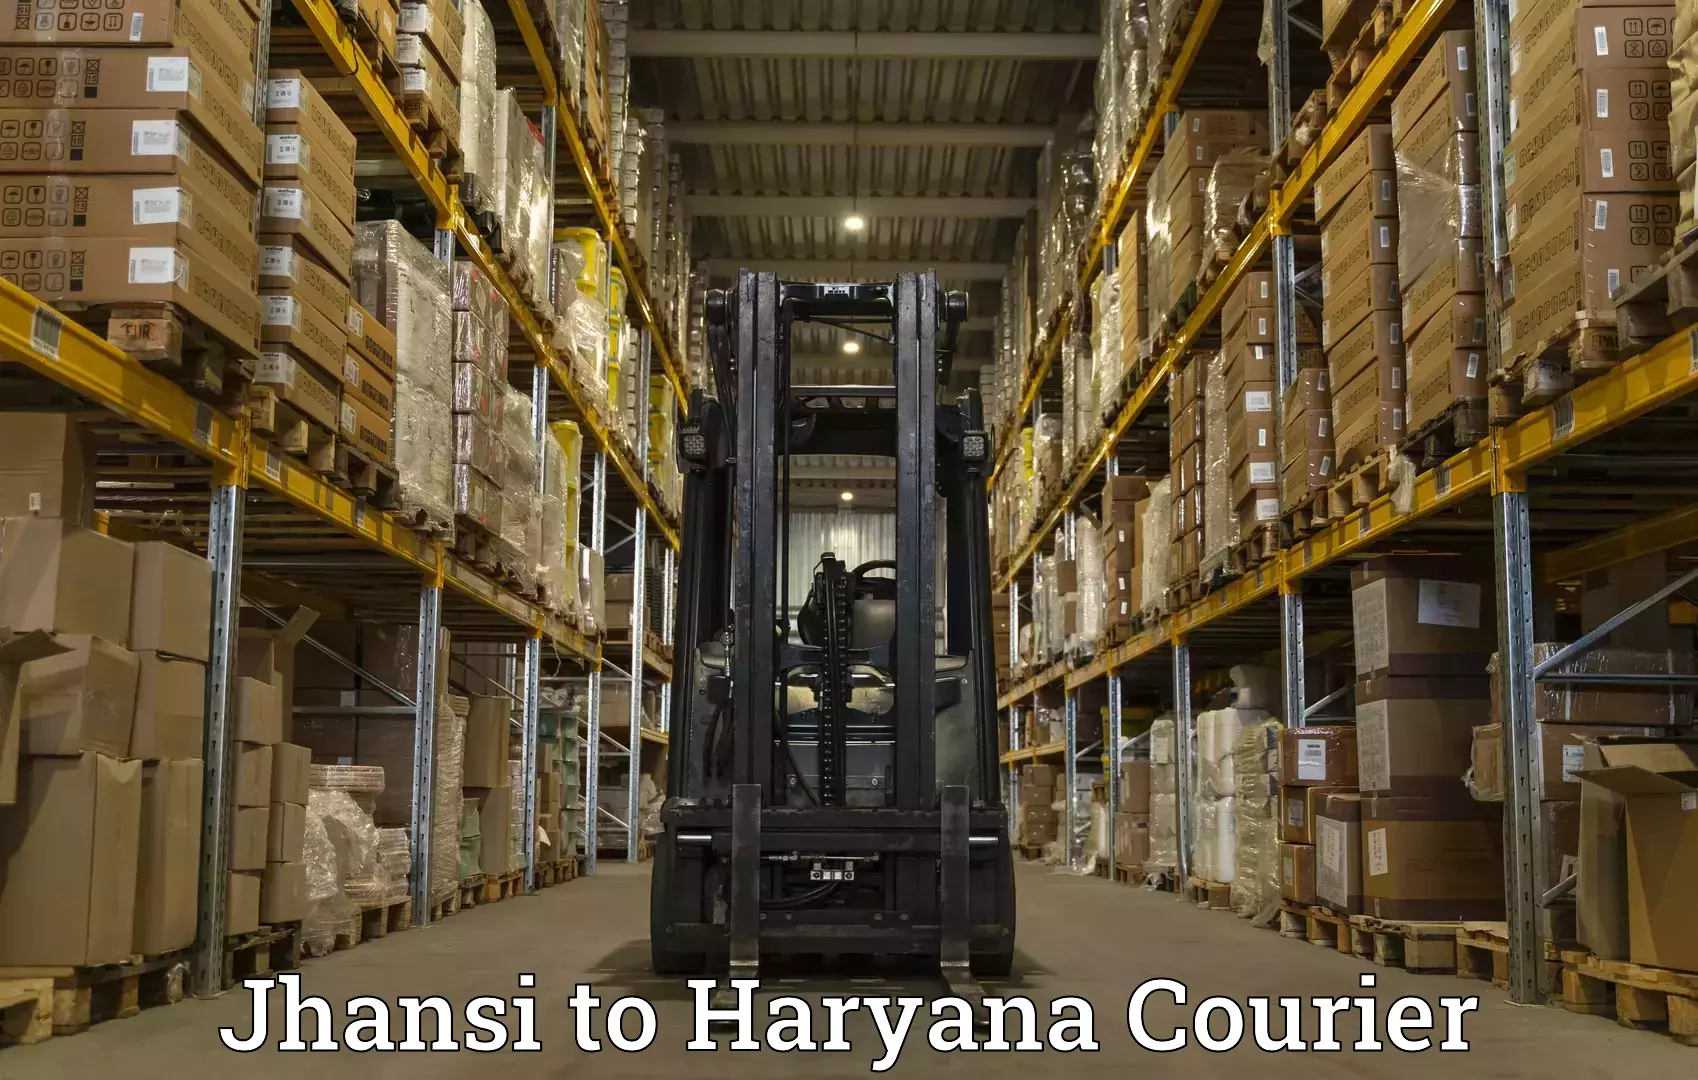 Express courier facilities Jhansi to Chaudhary Charan Singh Haryana Agricultural University Hisar